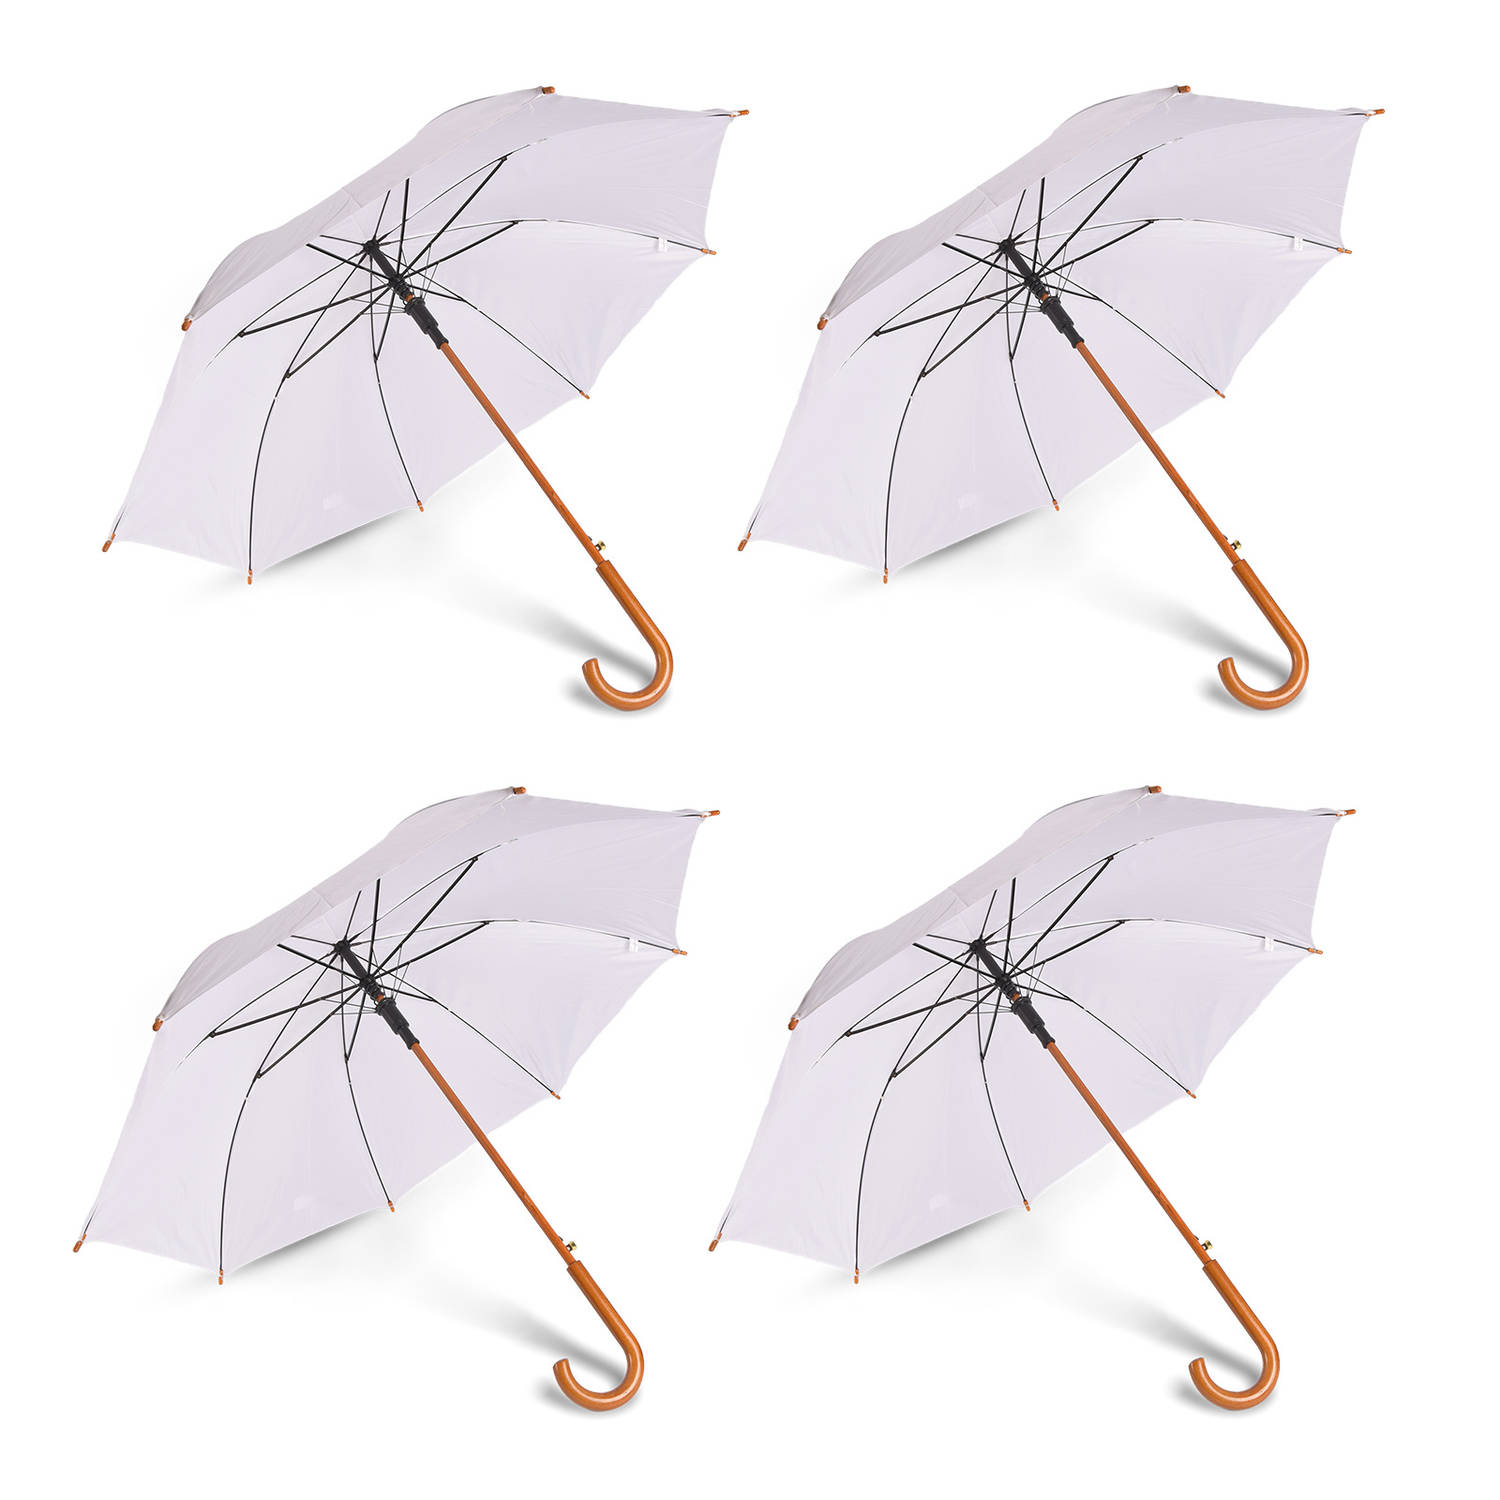 Set van 4 Sterke Automatische Opvouwbare Paraplu's - Voor Volwassenen - 102 cm Diameter - Wit Design - Duurzaam & Stijlvol